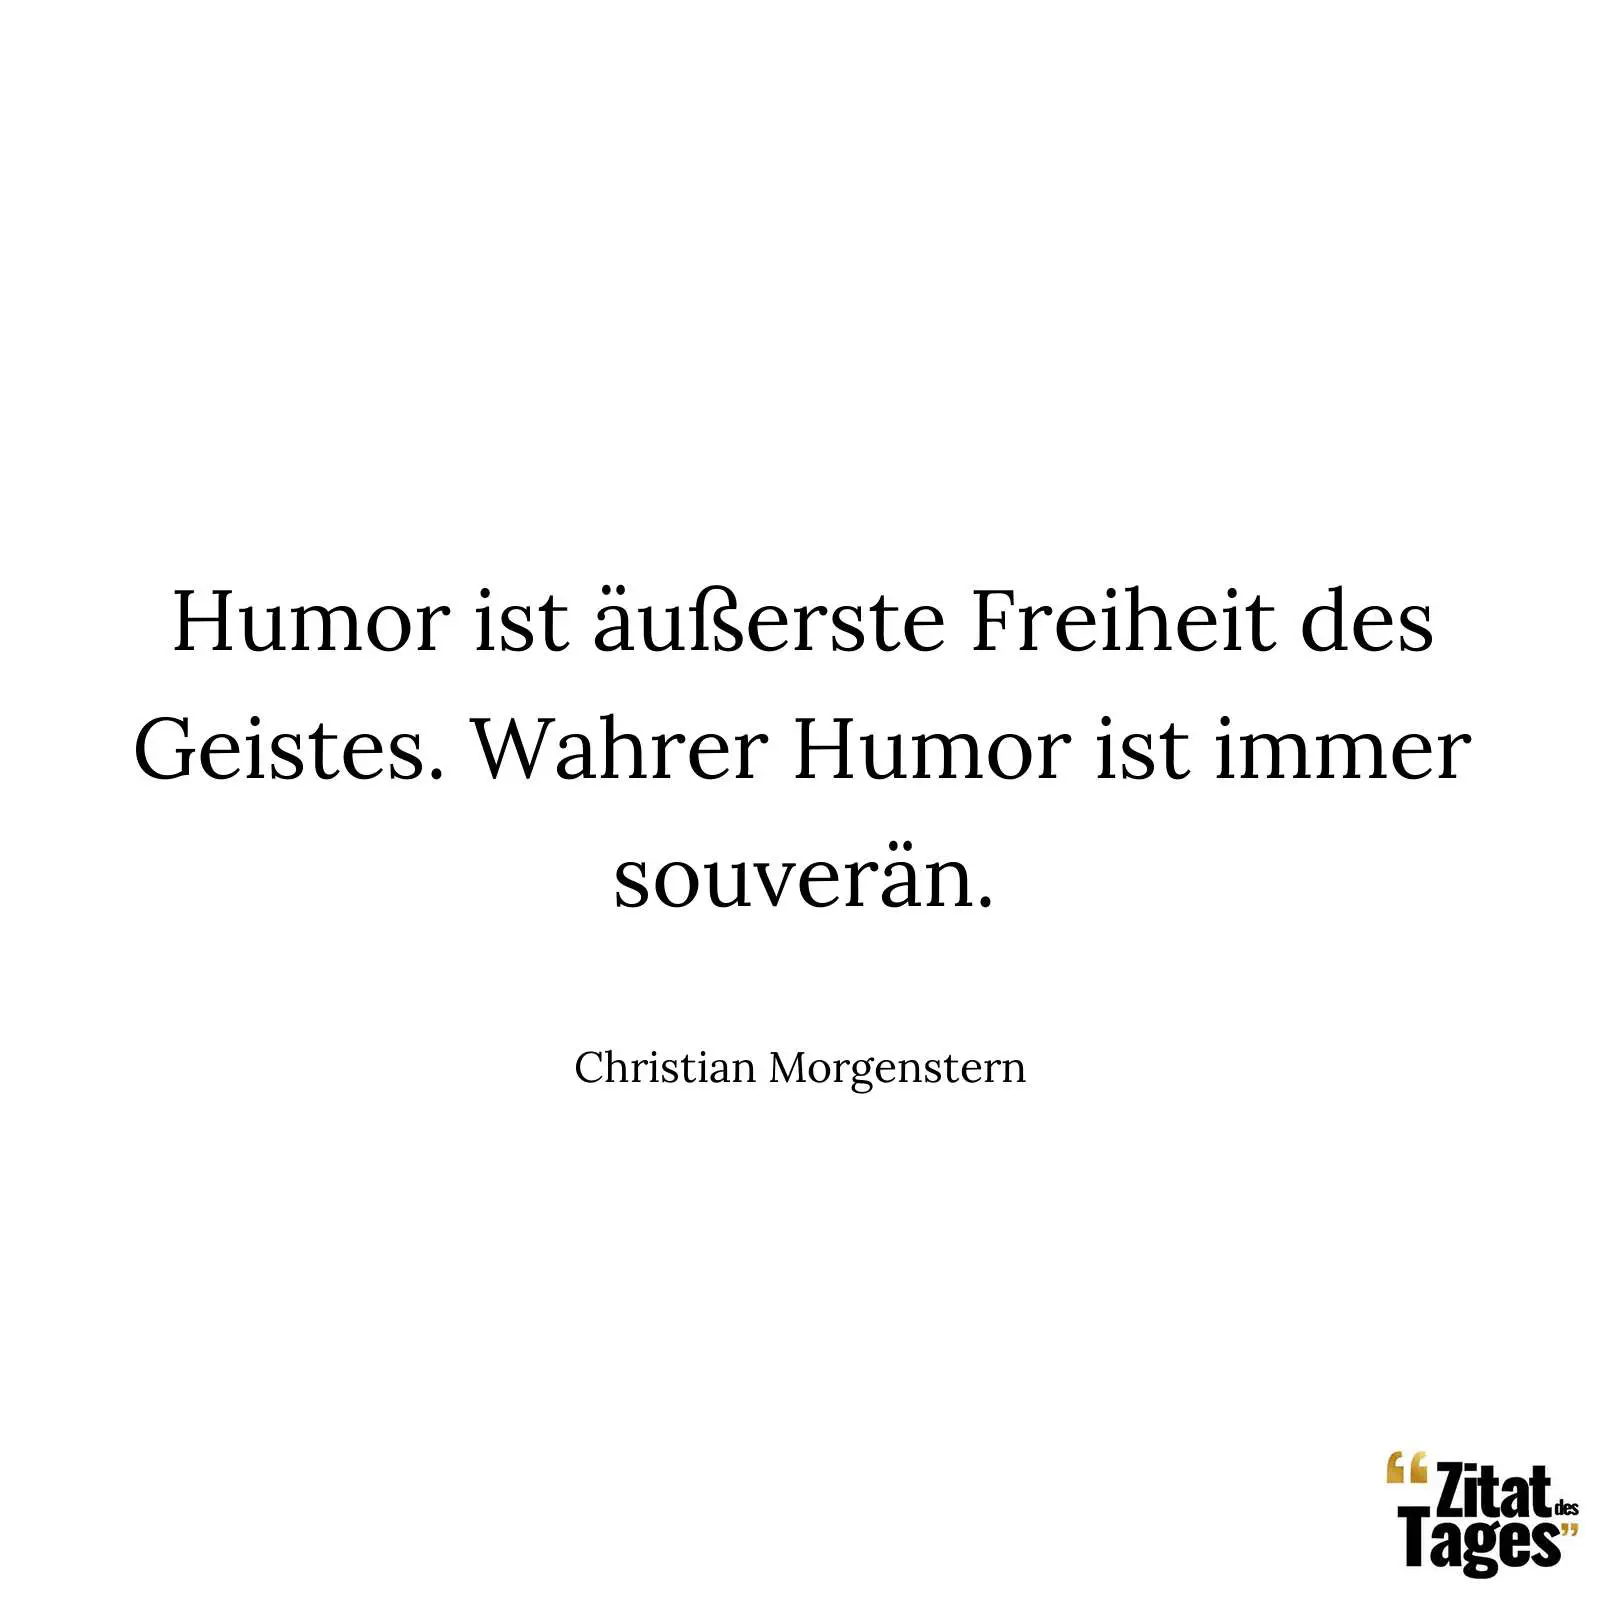 Humor ist äußerste Freiheit des Geistes. Wahrer Humor ist immer souverän. - Christian Morgenstern